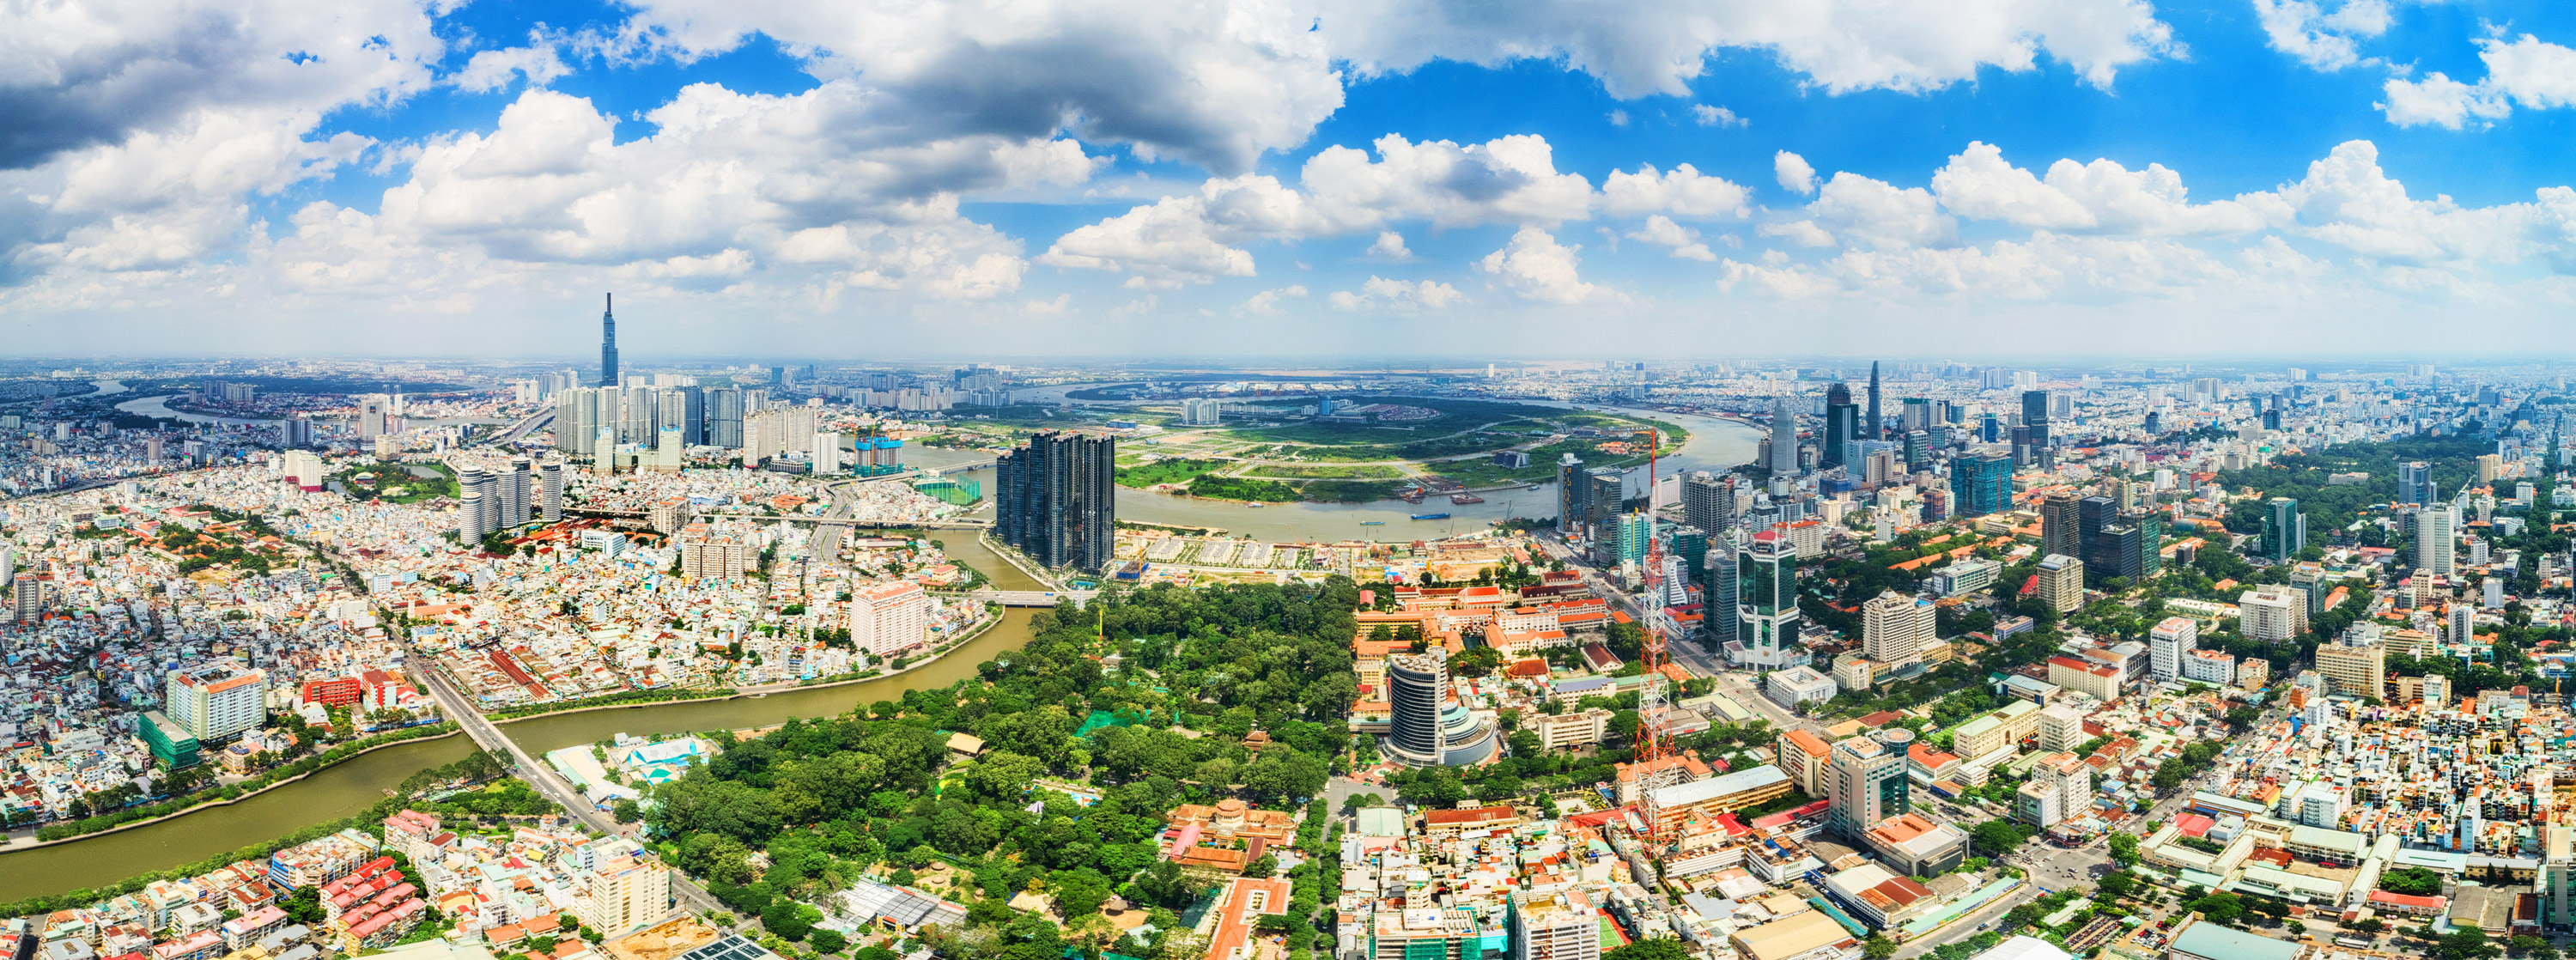 Với vai trò đầu tàu phát triển kinh tế của vùng, Hồ Chí Minh là một trong những thành phố có nền kinh tế phát triển nhanh nhất ở Việt Nam. Nơi đây có nhiều cơ hội việc làm, đầu tư và phát triển doanh nghiệp. Đến Hồ Chí Minh và tận dụng những cơ hội này.